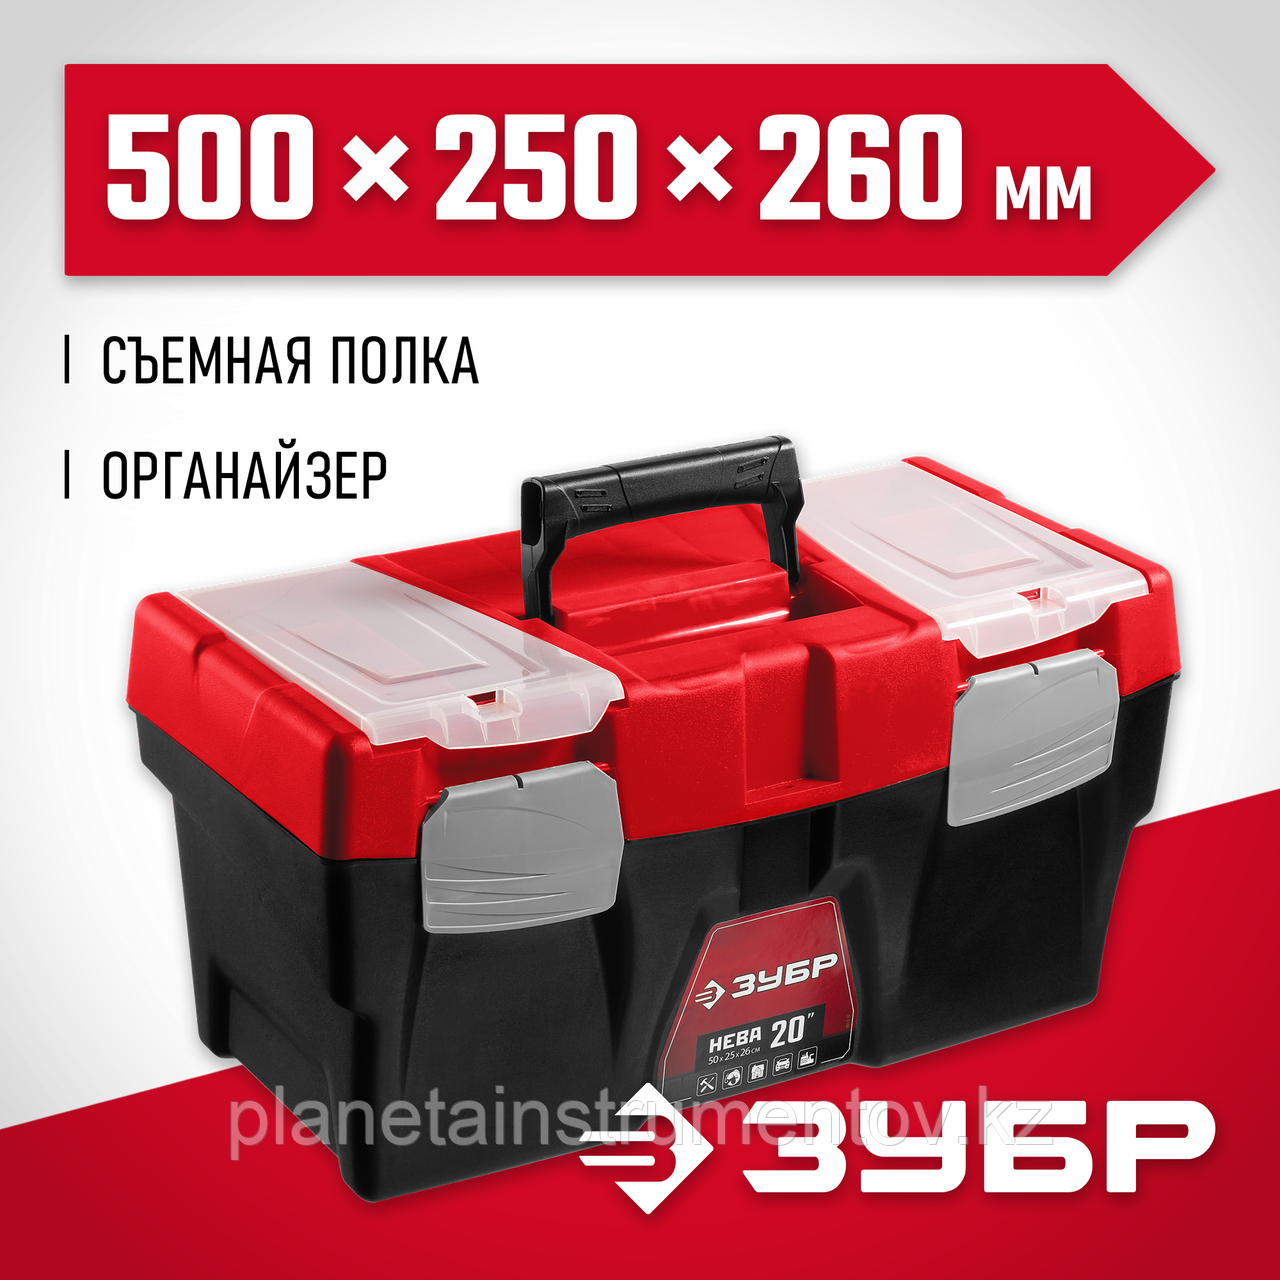 ЗУБР НЕВА-20, 500 х 250 х 260 мм, (20″), Пластиковый ящик для инструментов (38323-20)